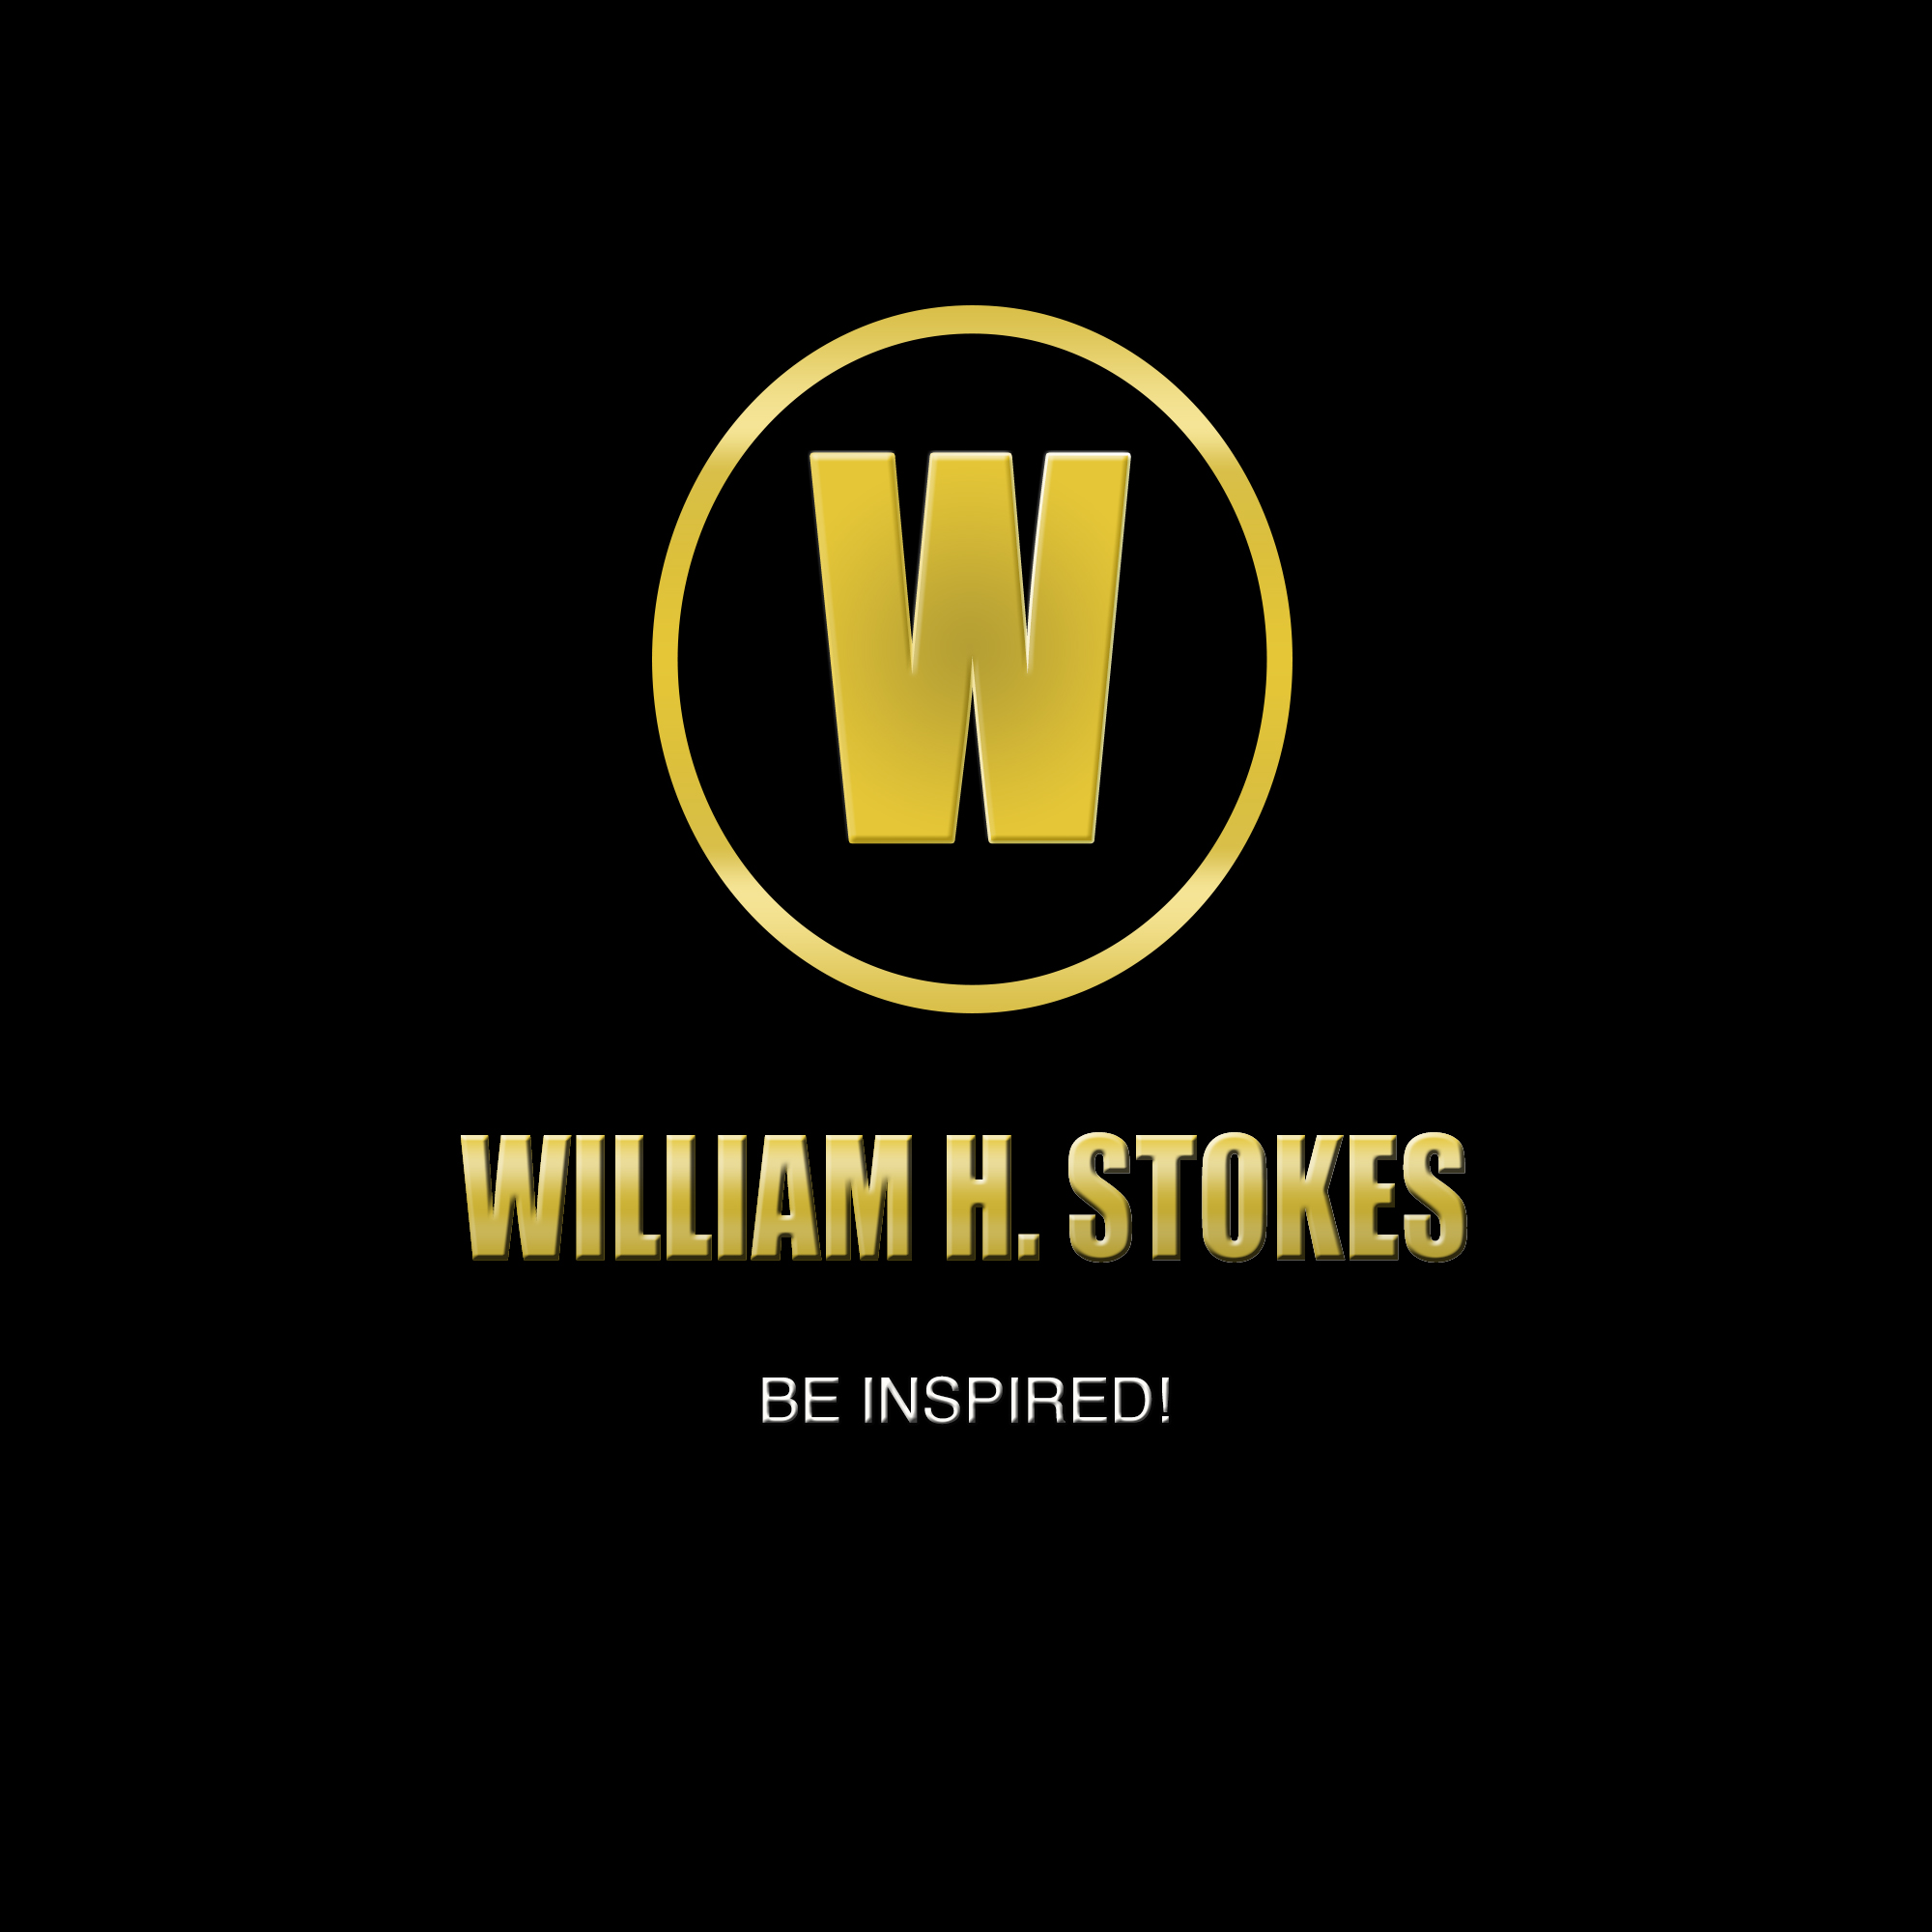 William H. Stokes logo